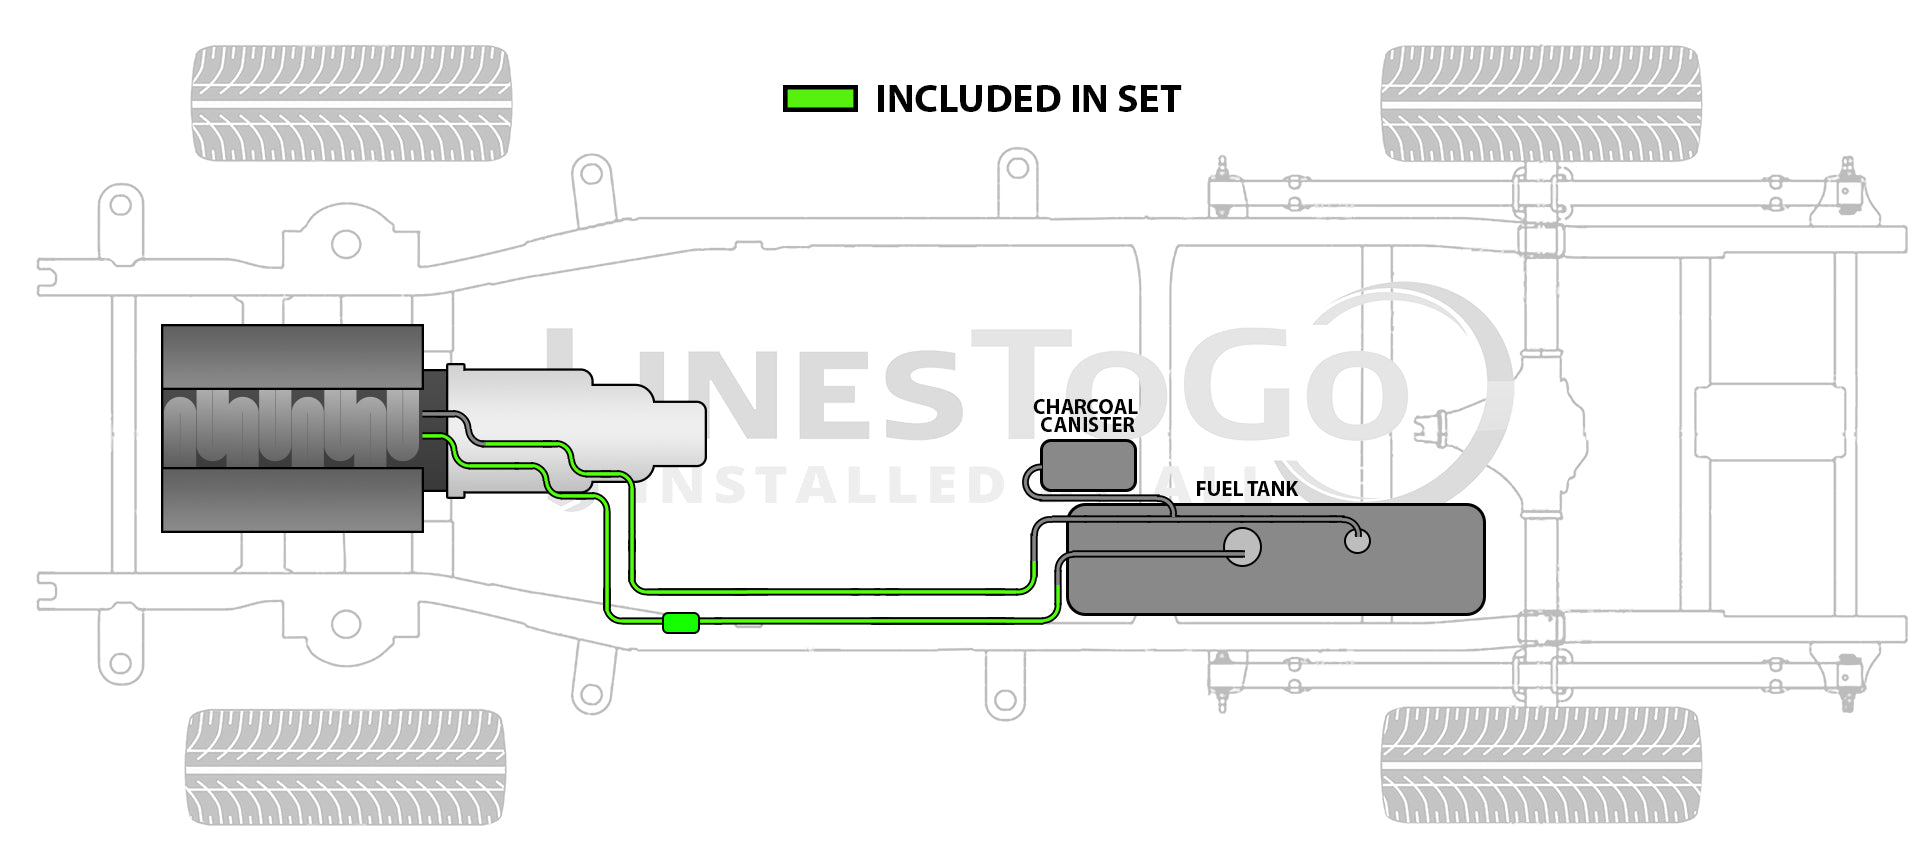 Chevy Tahoe Fuel Line Set 2005 1500 4 Dr 5.3L "Z" (L59) Non Flex Fuel Only FL188-E11B